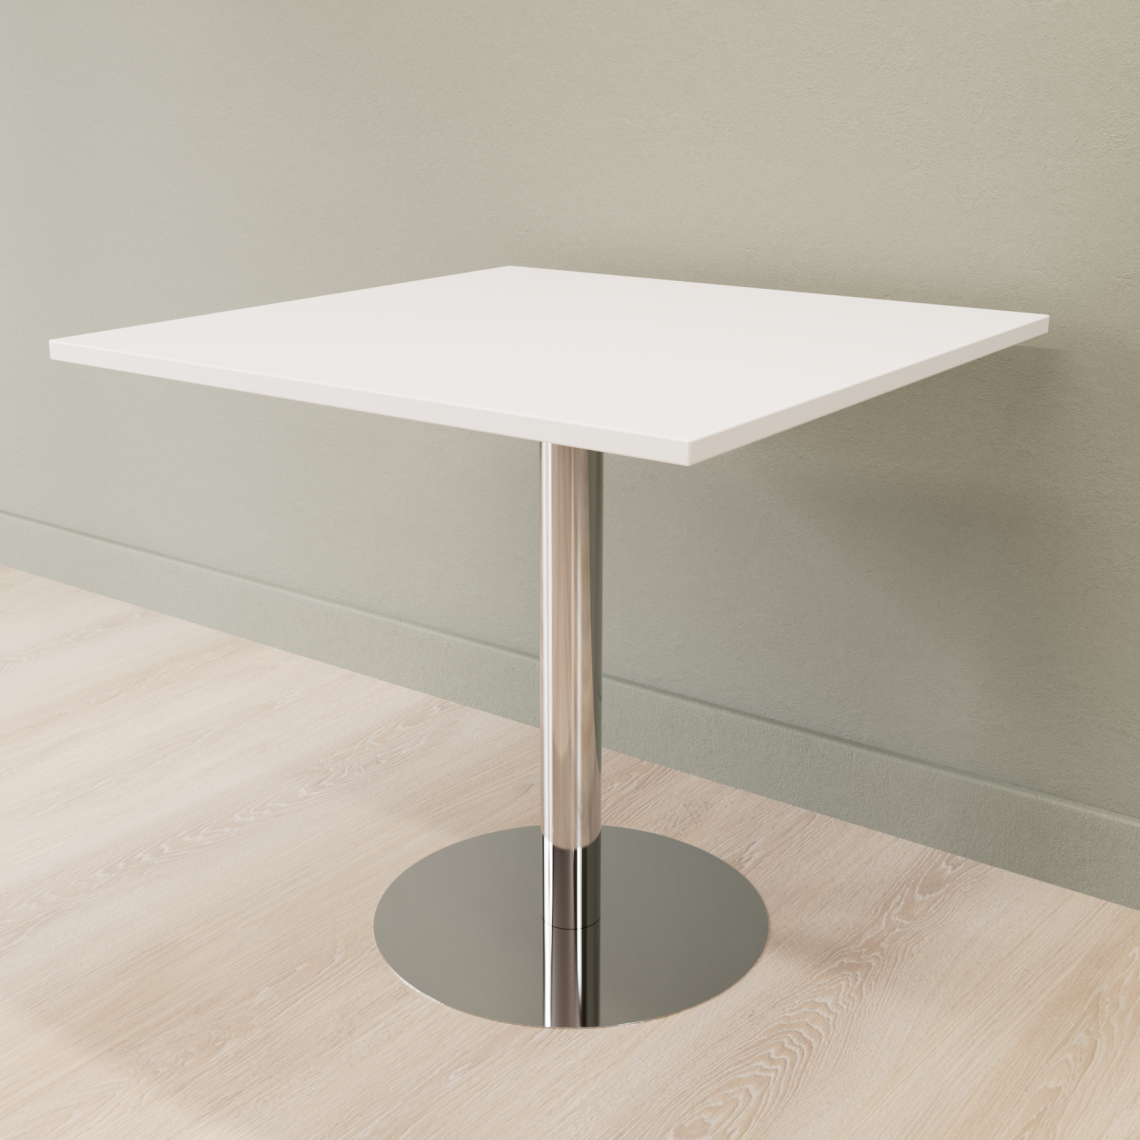 Cafebord med firkantet bordplade og rund fod, Størrelse 60 x 60 cm, Bordplade Hvid, Stativ Poleret rustfrit stål